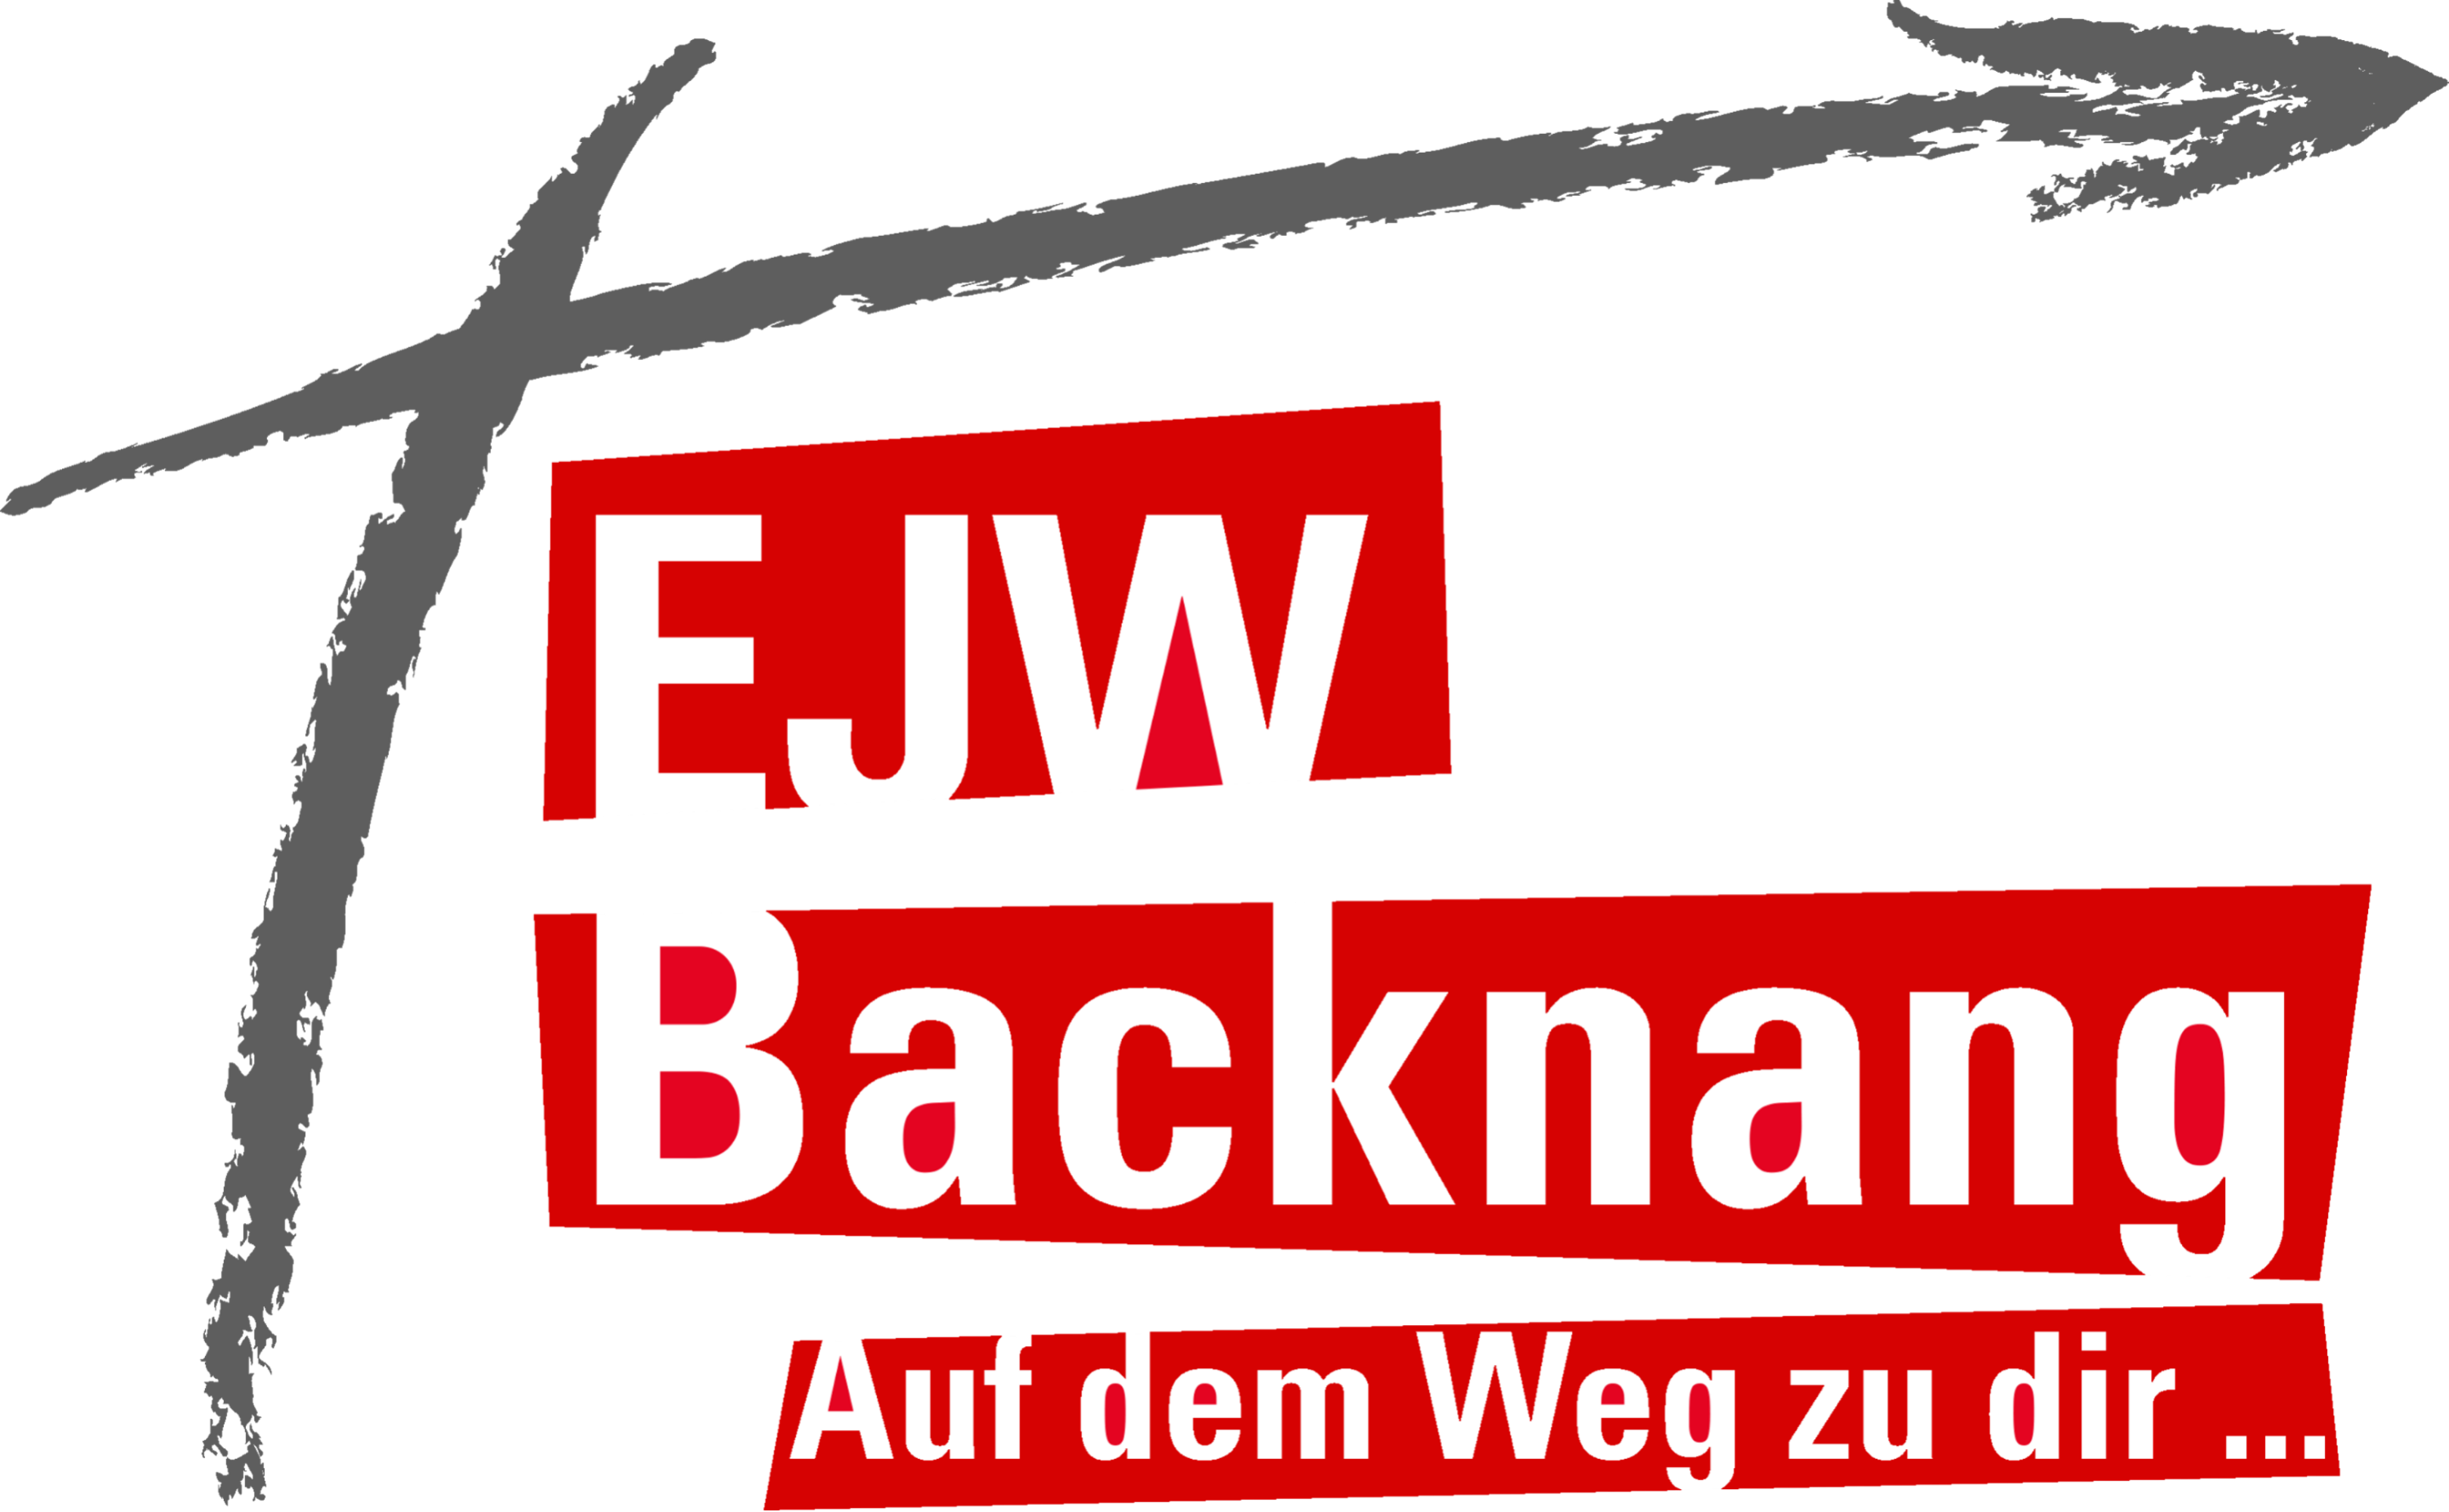 Evangelisches Jugendwerk Bezirk Backnang